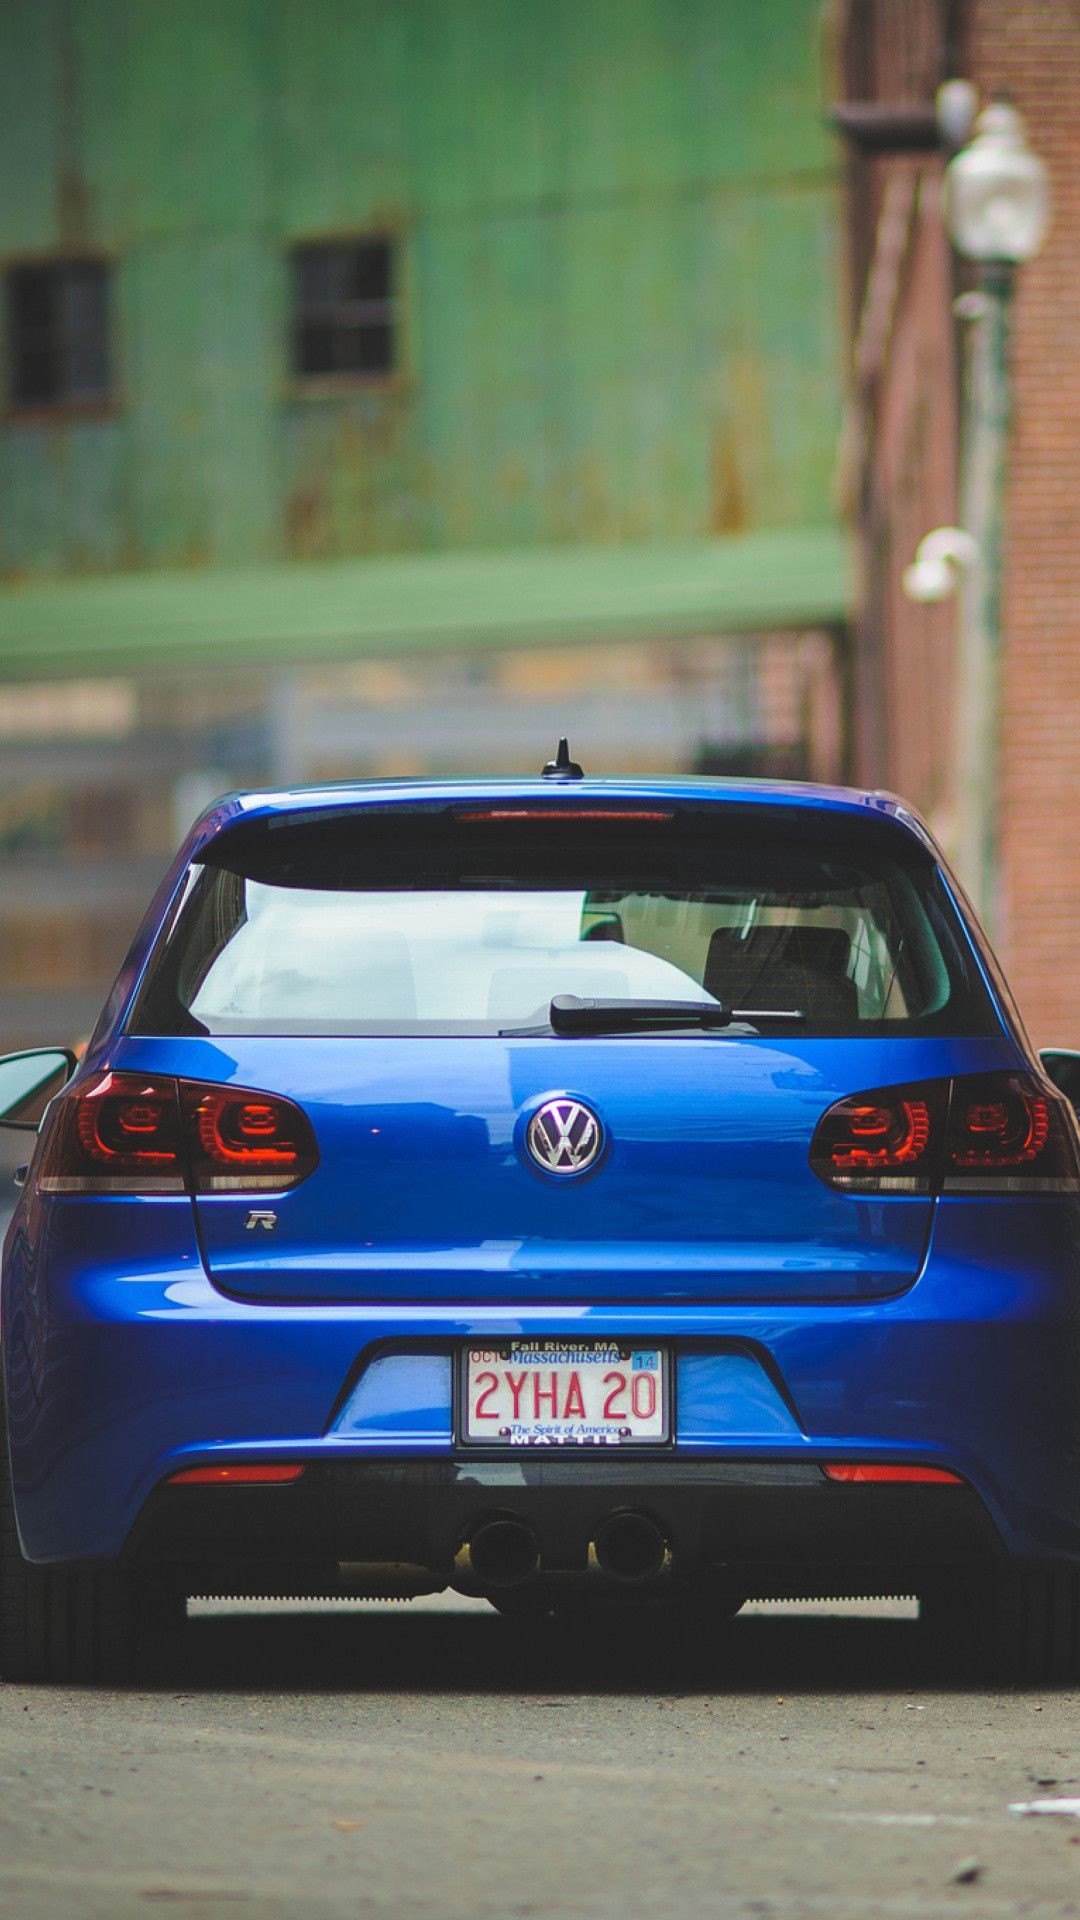 1080x1920  Volkswagen Golf R Wallpaper for iPhone 6 Plus